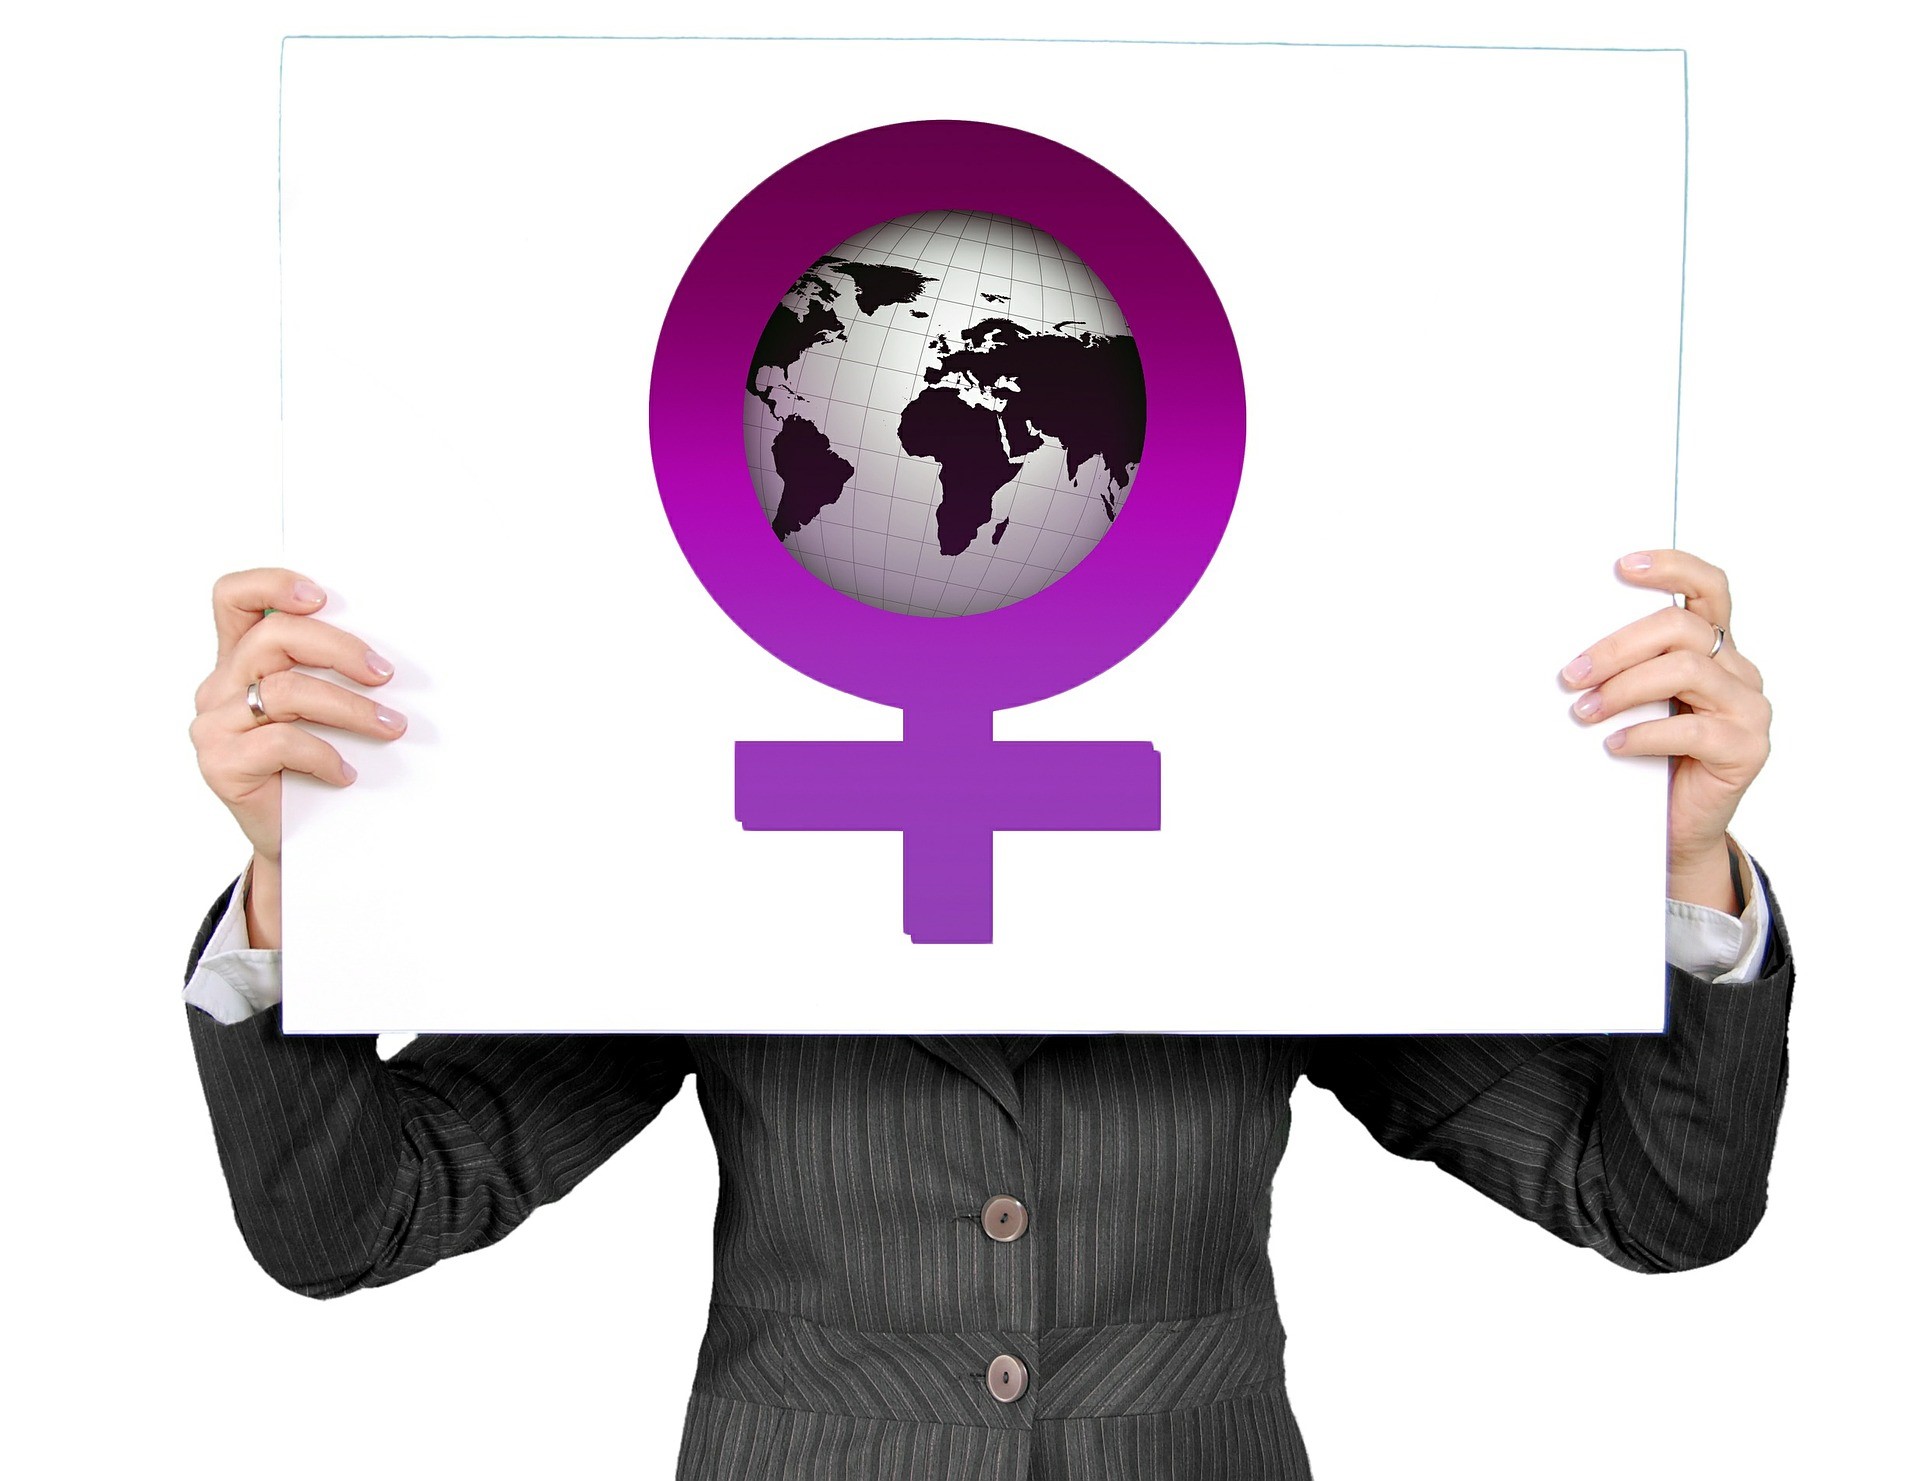 SPDR SSGA Gender Diversity Index ETF (SHE ETF) följer ett börsvärdevägt index över amerikanska storbolag med en relativt hög andel kvinnor i ledande befattningar och direktörsposter. SPDR SSGA Gender Diversity Index ETF (SHE ETF), som handlas på NYSEArca, är en utdelande ETF. Denna börshandlade fond kommer med en årlig förvaltningskostnad på 0,2 procent.